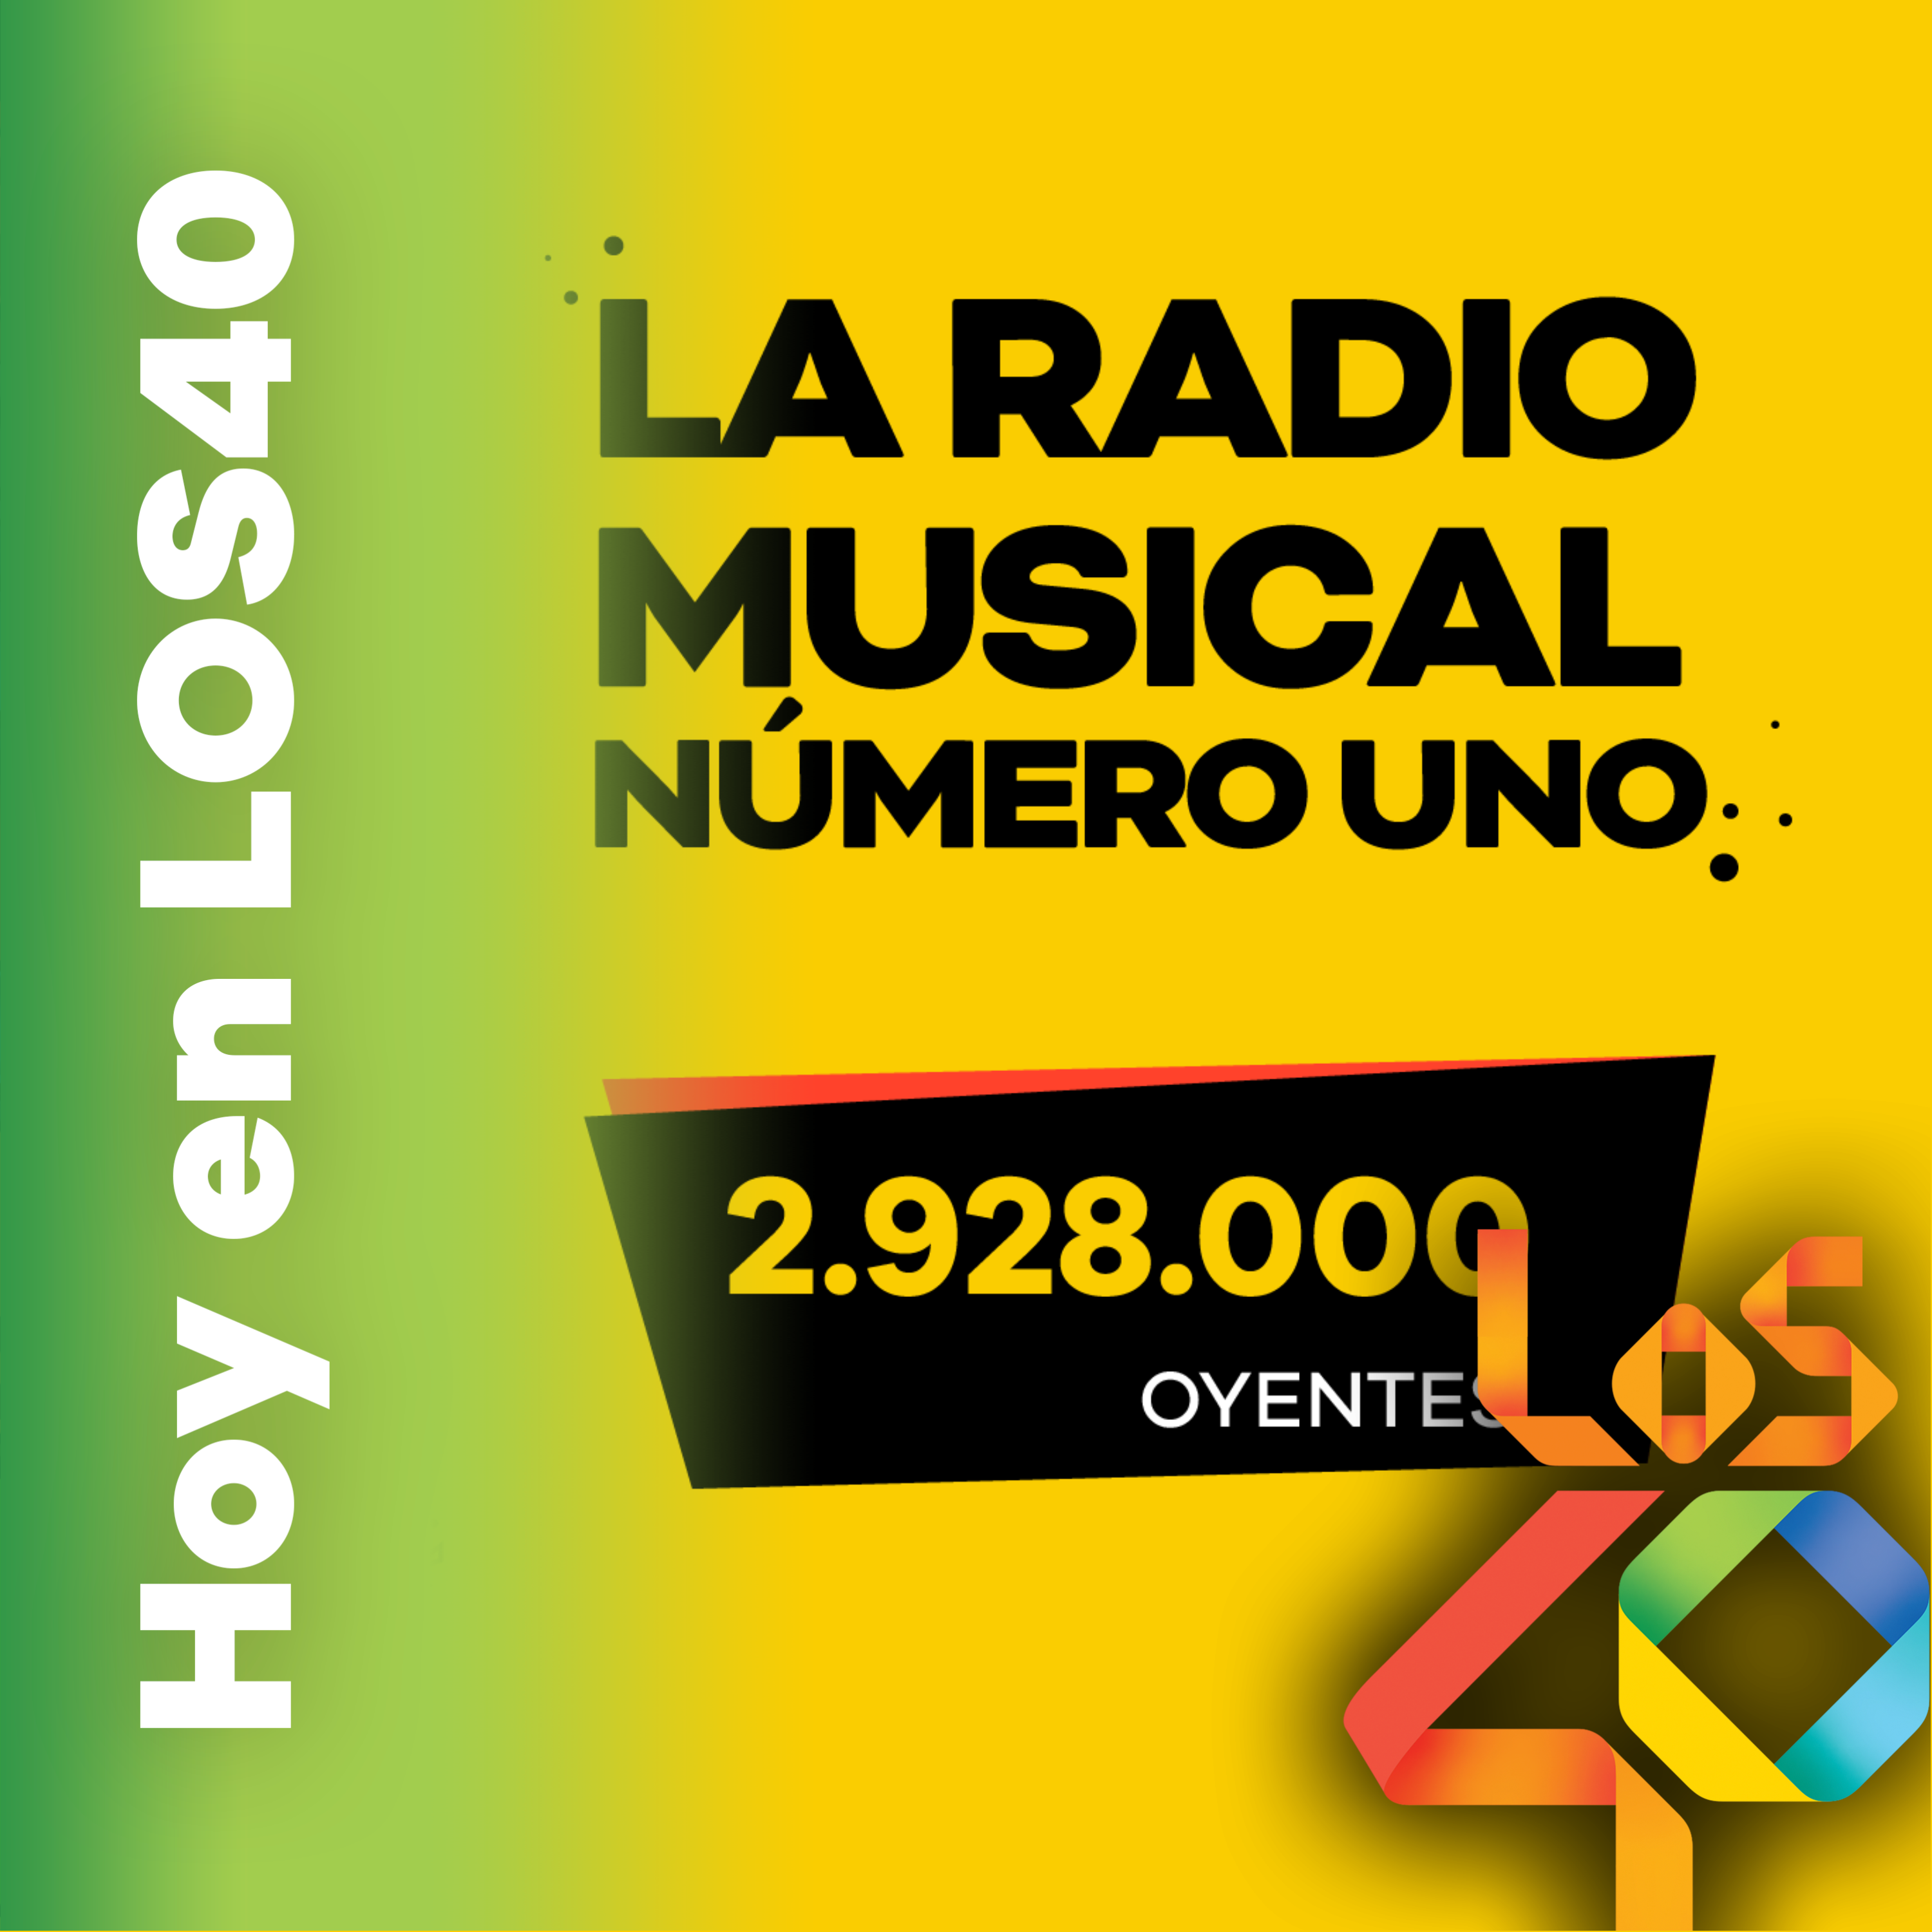 LOS40 cierra el año creciendo como líder en la radio musical de España - Noticias del 1 de diciembre – HOY EN LOS40